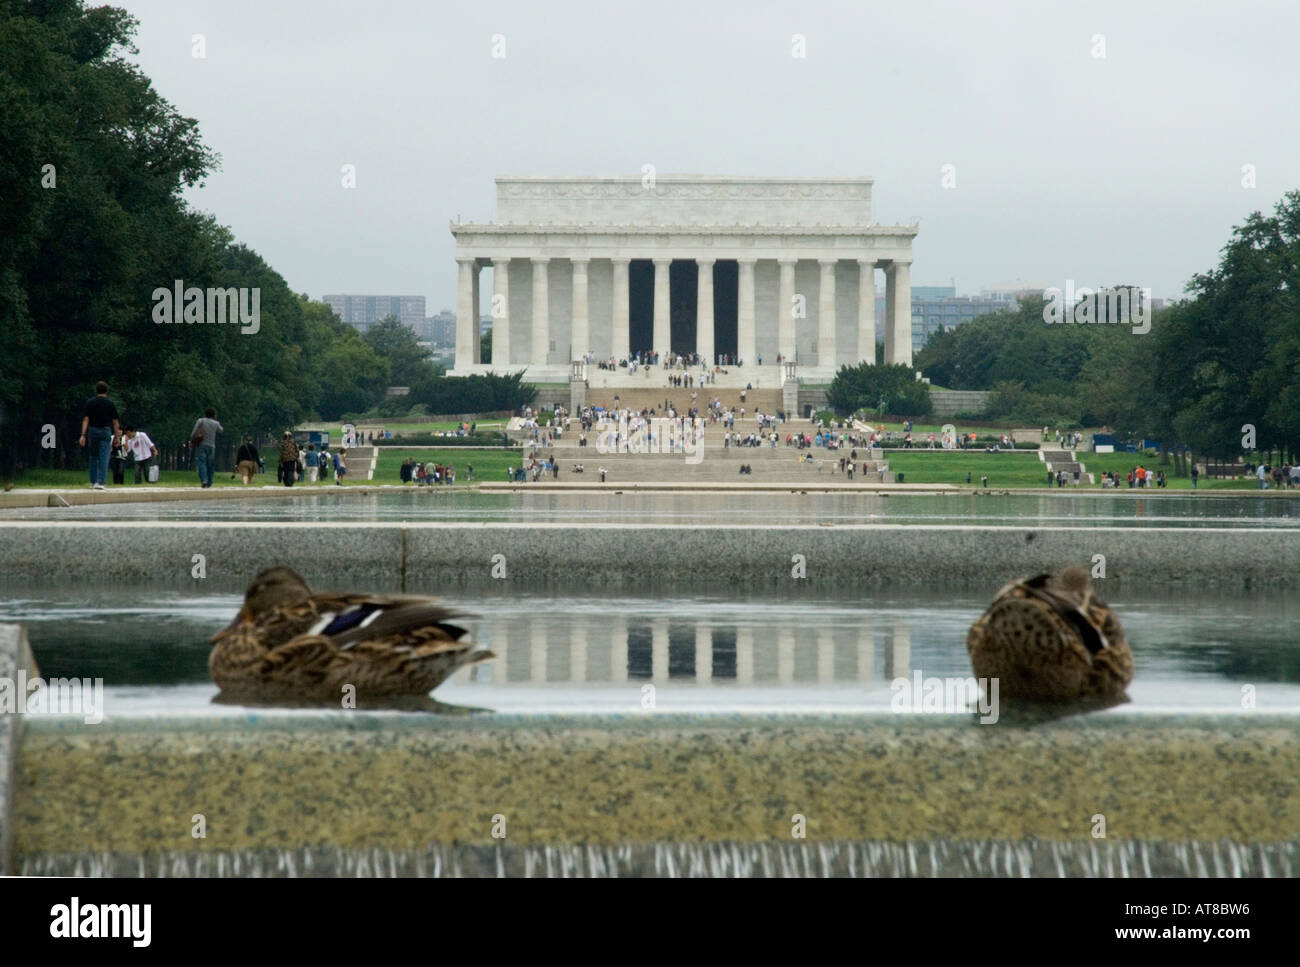 Le Memoial Lincoln comme vue à travers deux canards de la World War II Memorial à Washington DC United States of America Banque D'Images